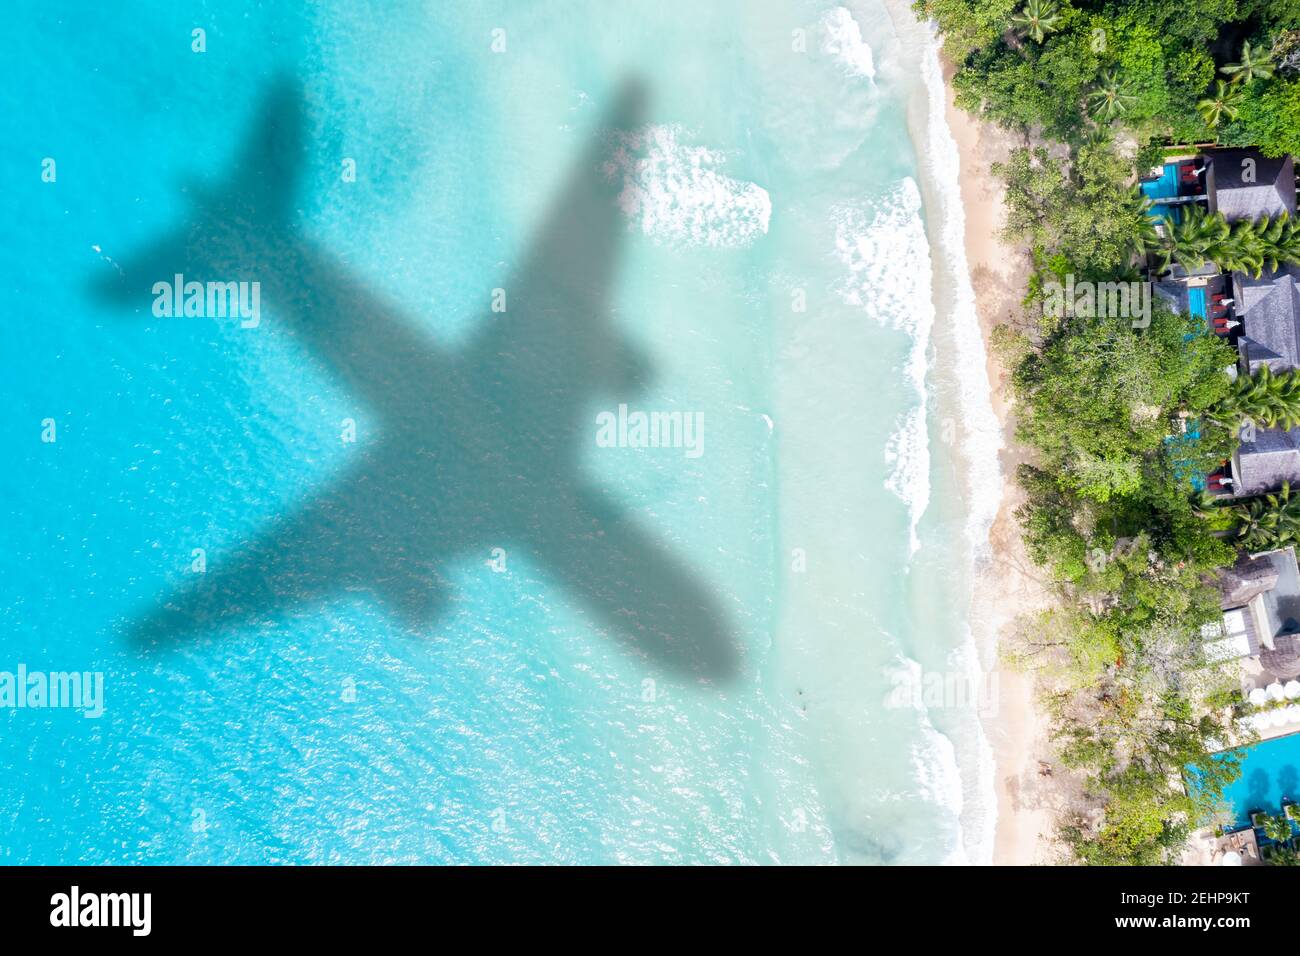 Reisen Reisen Urlaub Meer symbolische Bild Flugzeug fliegen Copyspace Kopie Raum Seychellen Strand Wasser Bild Stockfoto